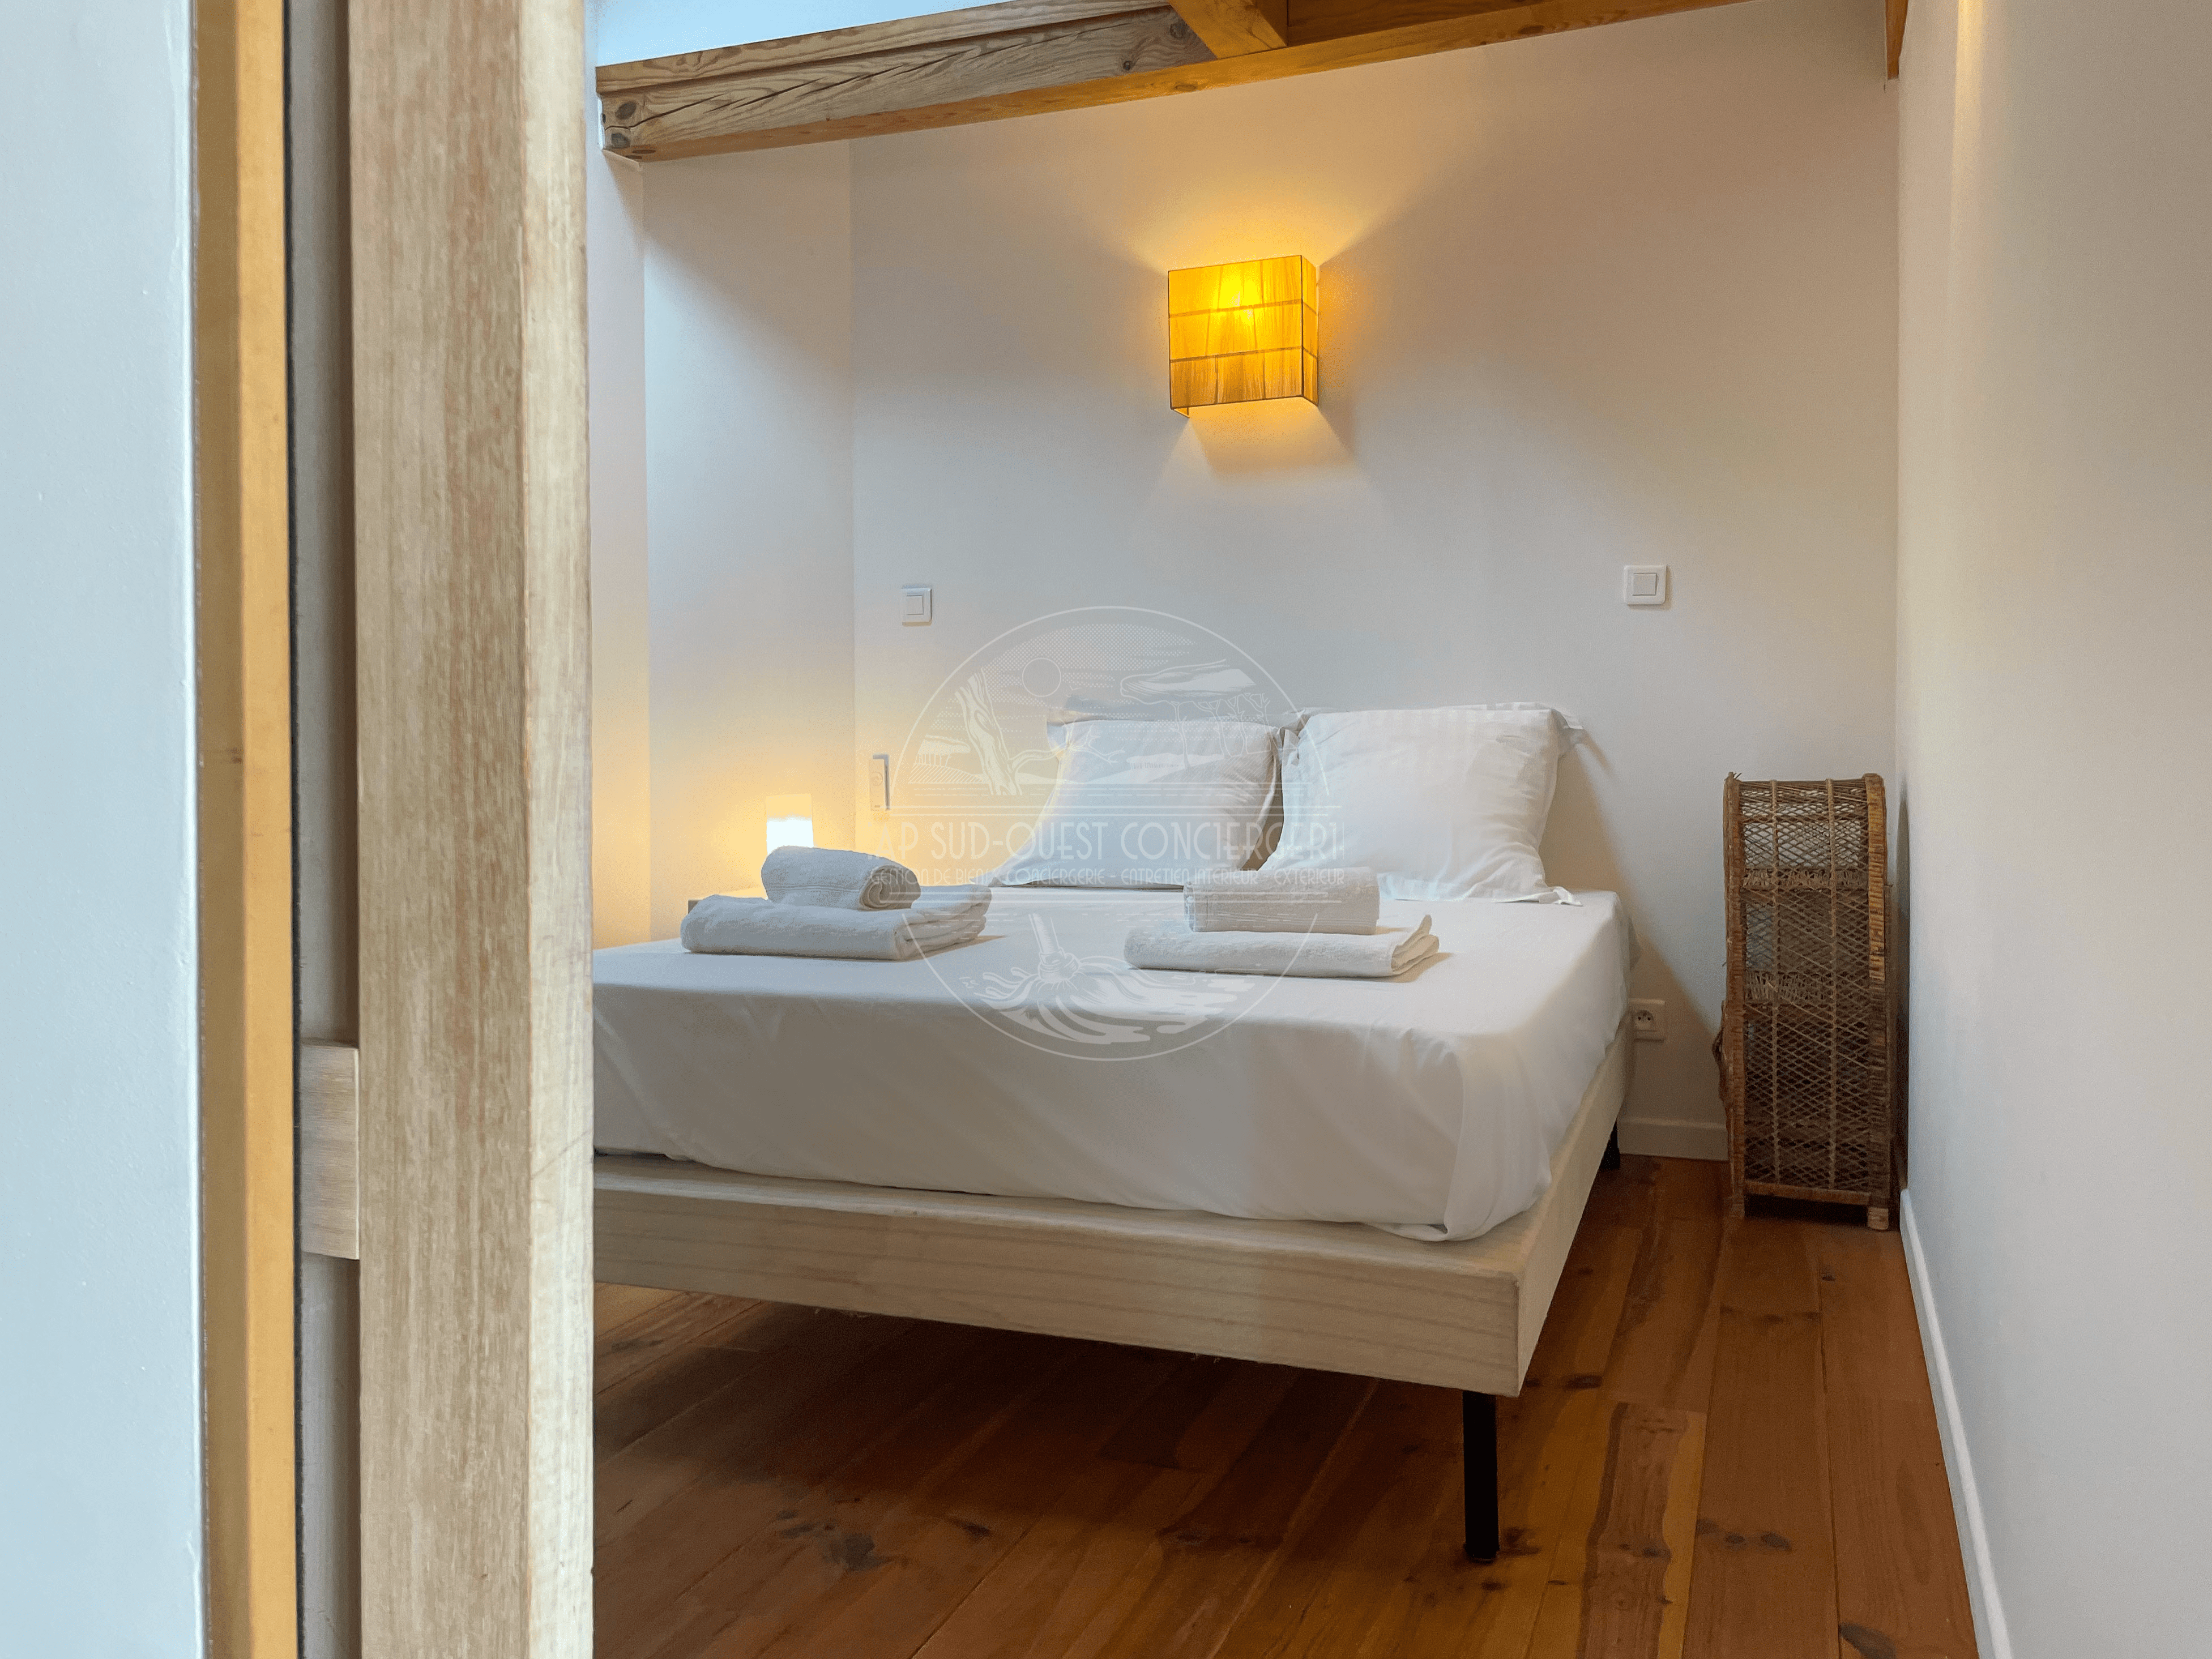 chambre lit double 160x200 villa capbreton